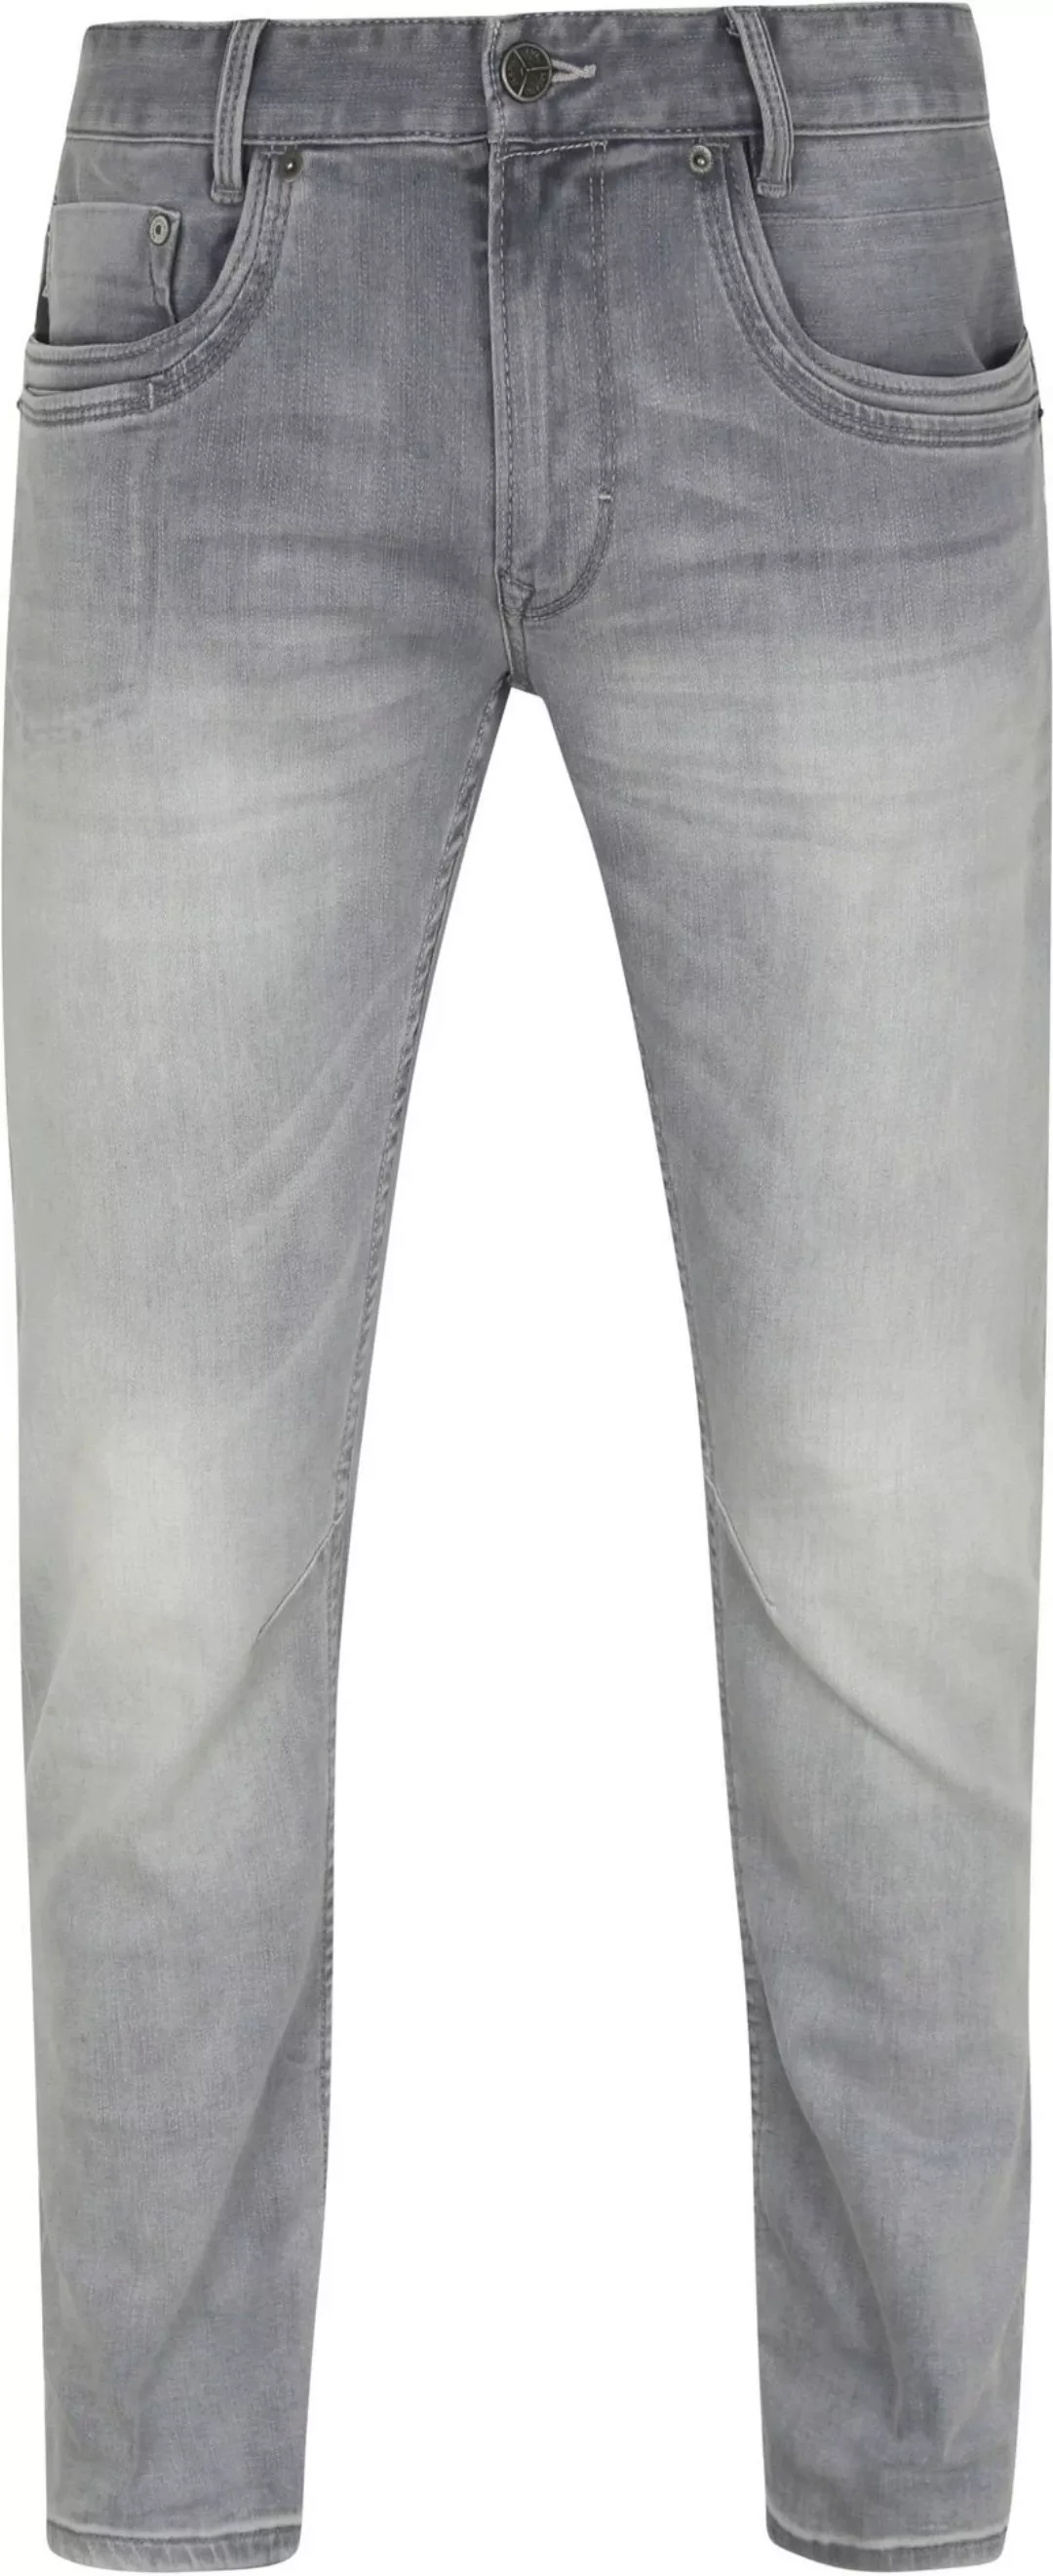 PME Legend Skymaster Jeans Grau Gebleicht - Größe W 30 - L 34 günstig online kaufen